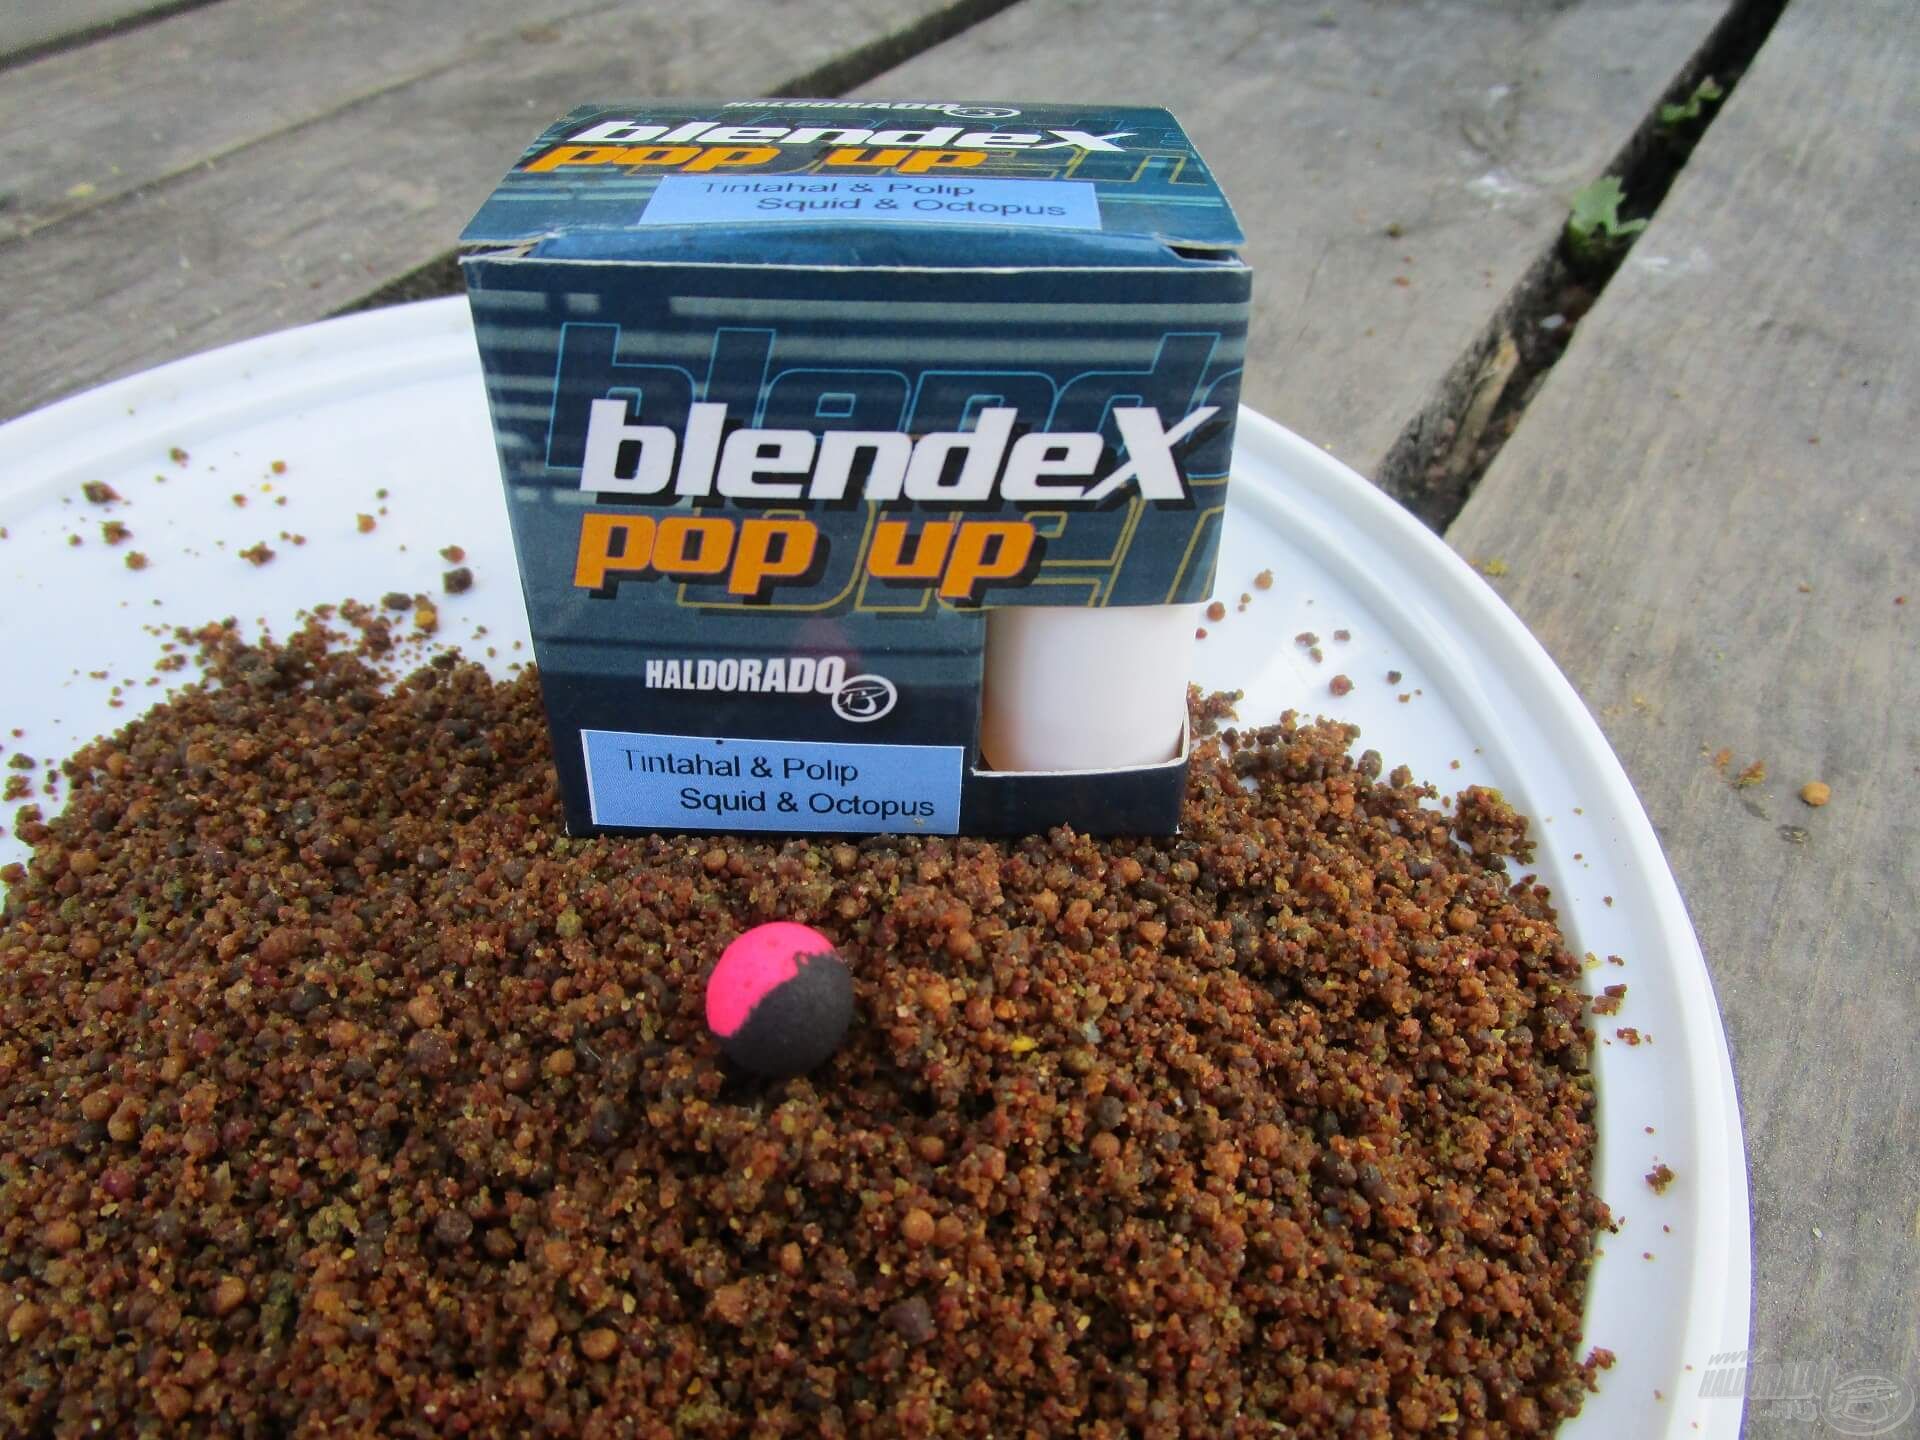 A BlendeX Pop Up egy igazán különleges csali, a pontyhorgászok nagy kedvence